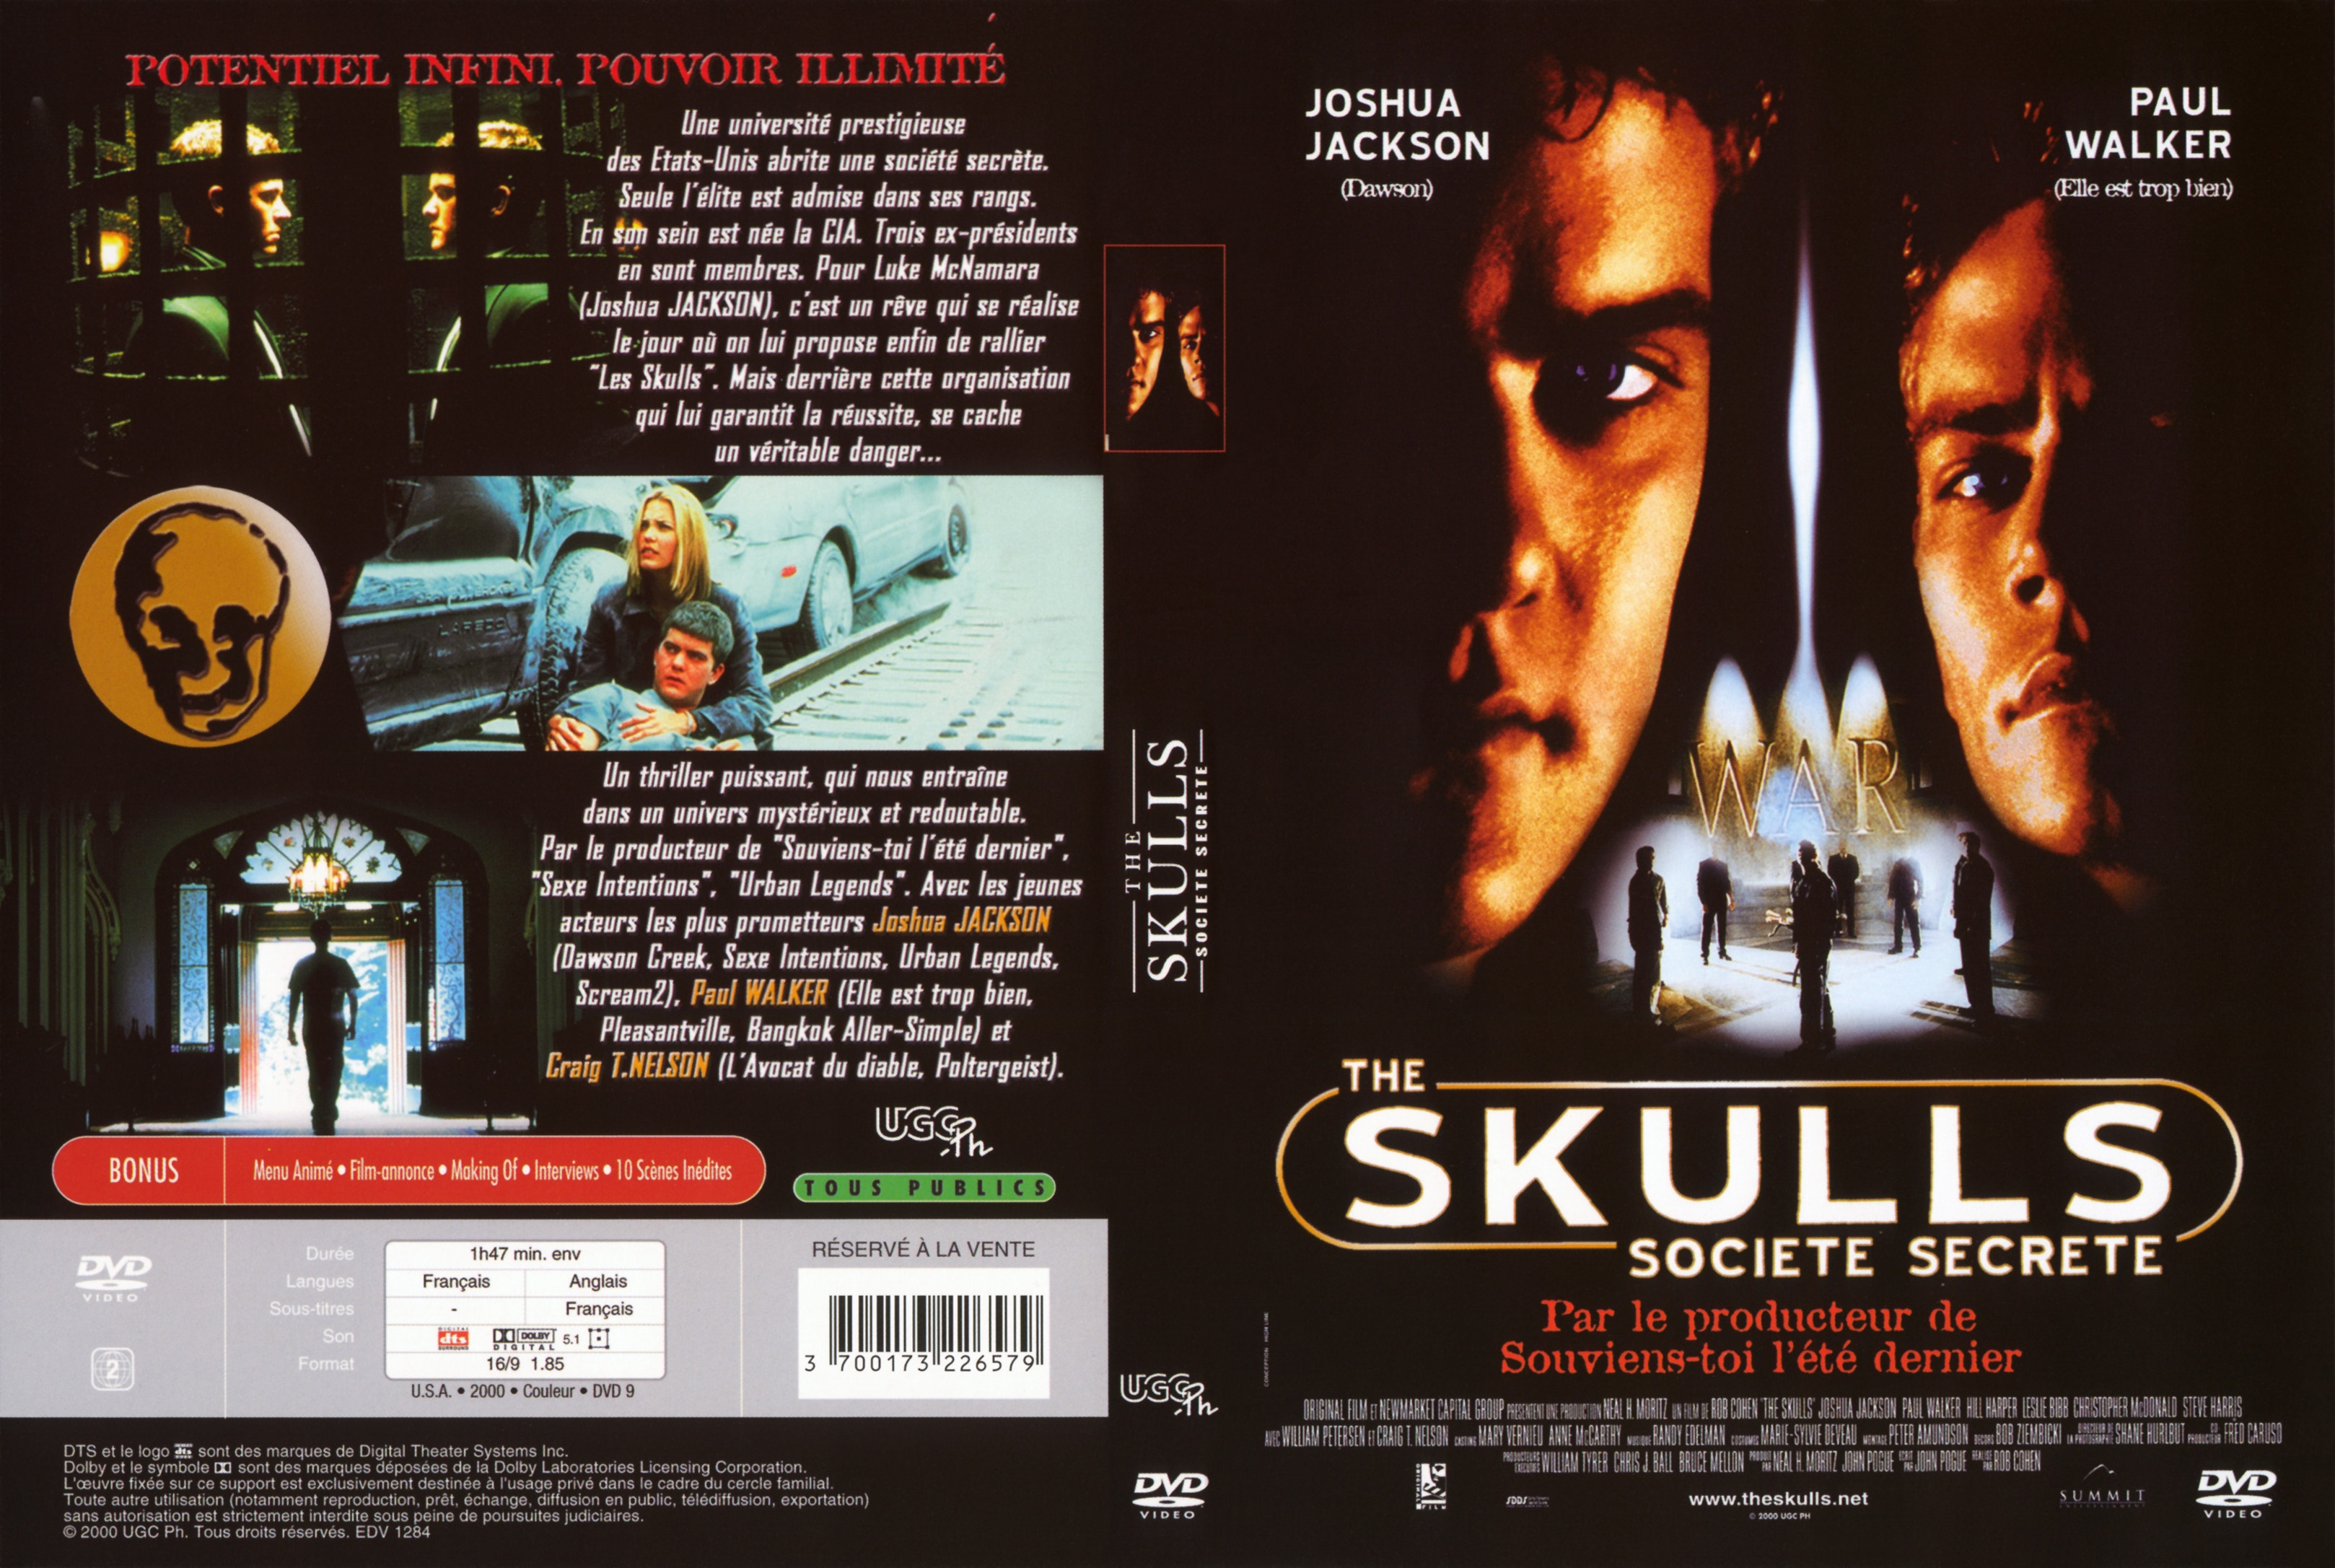 Jaquette DVD The skulls v2